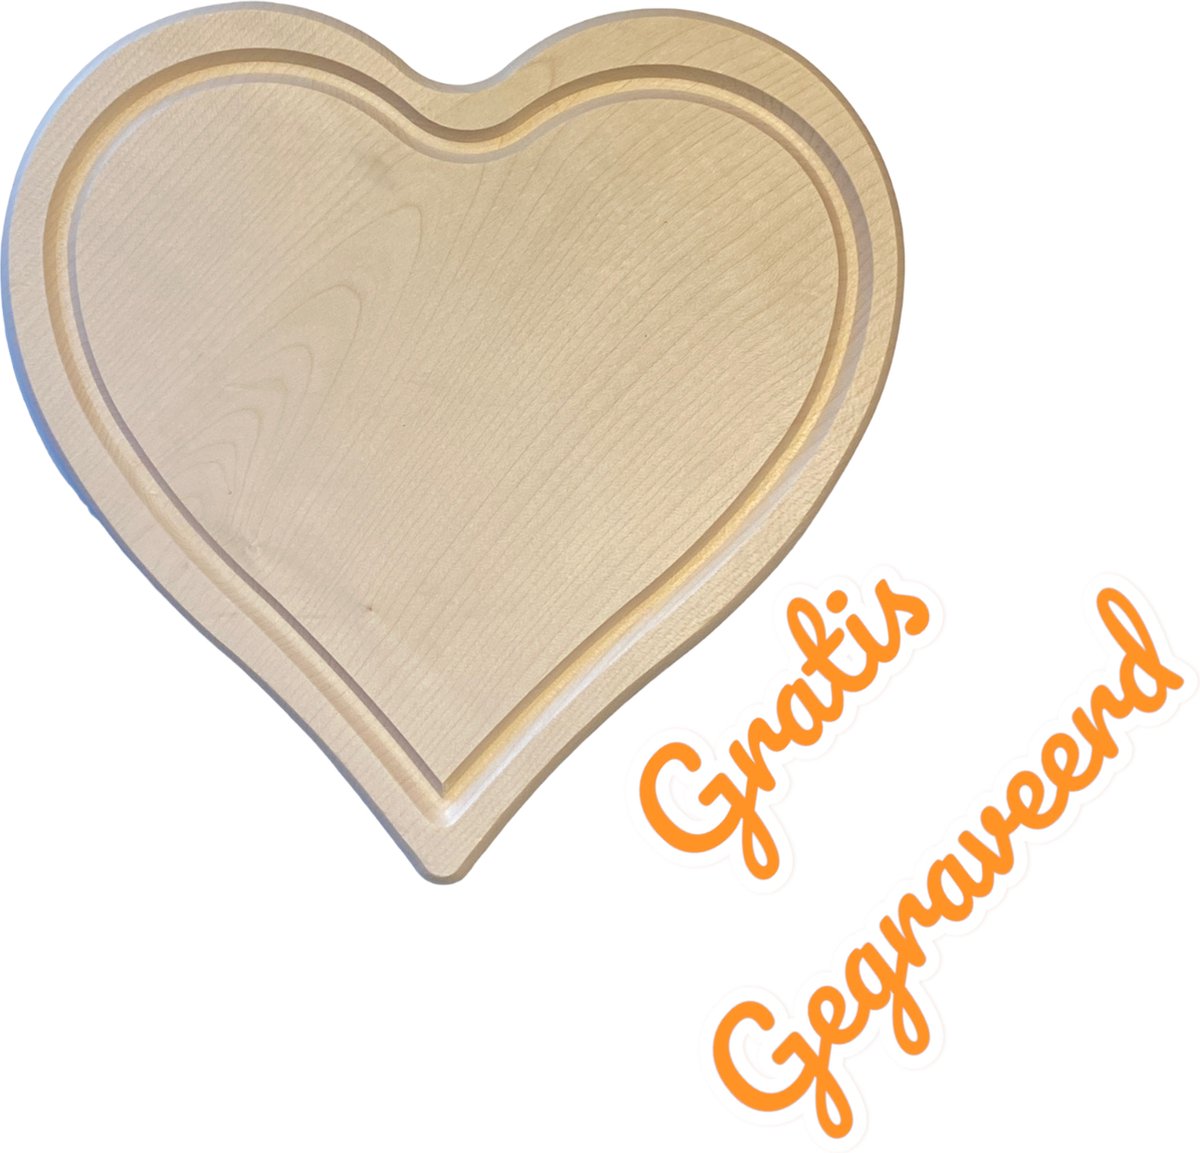 Serveerplank - GRATIS Gegraveerd - Hart - Leuk kado - 24 x 24 cm. - Leuk Cadeau - persoonlijk Valentijns cadeau